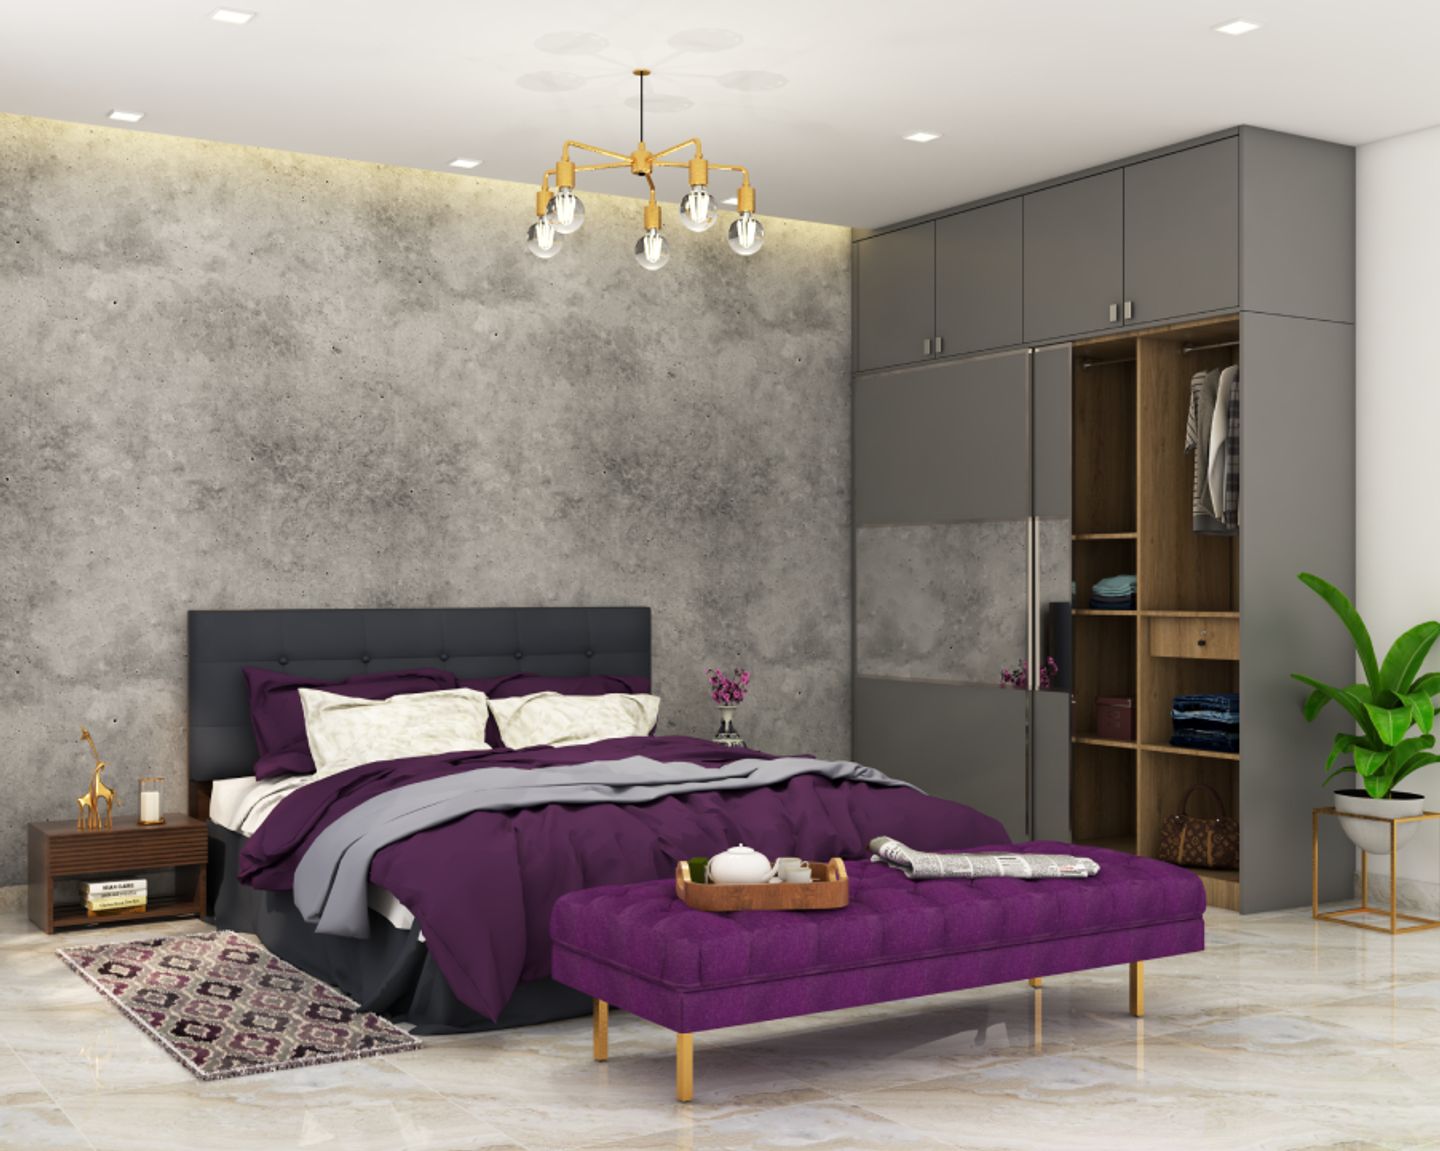 Dark Grey Textured Bedroom Wall Paint - Livspace